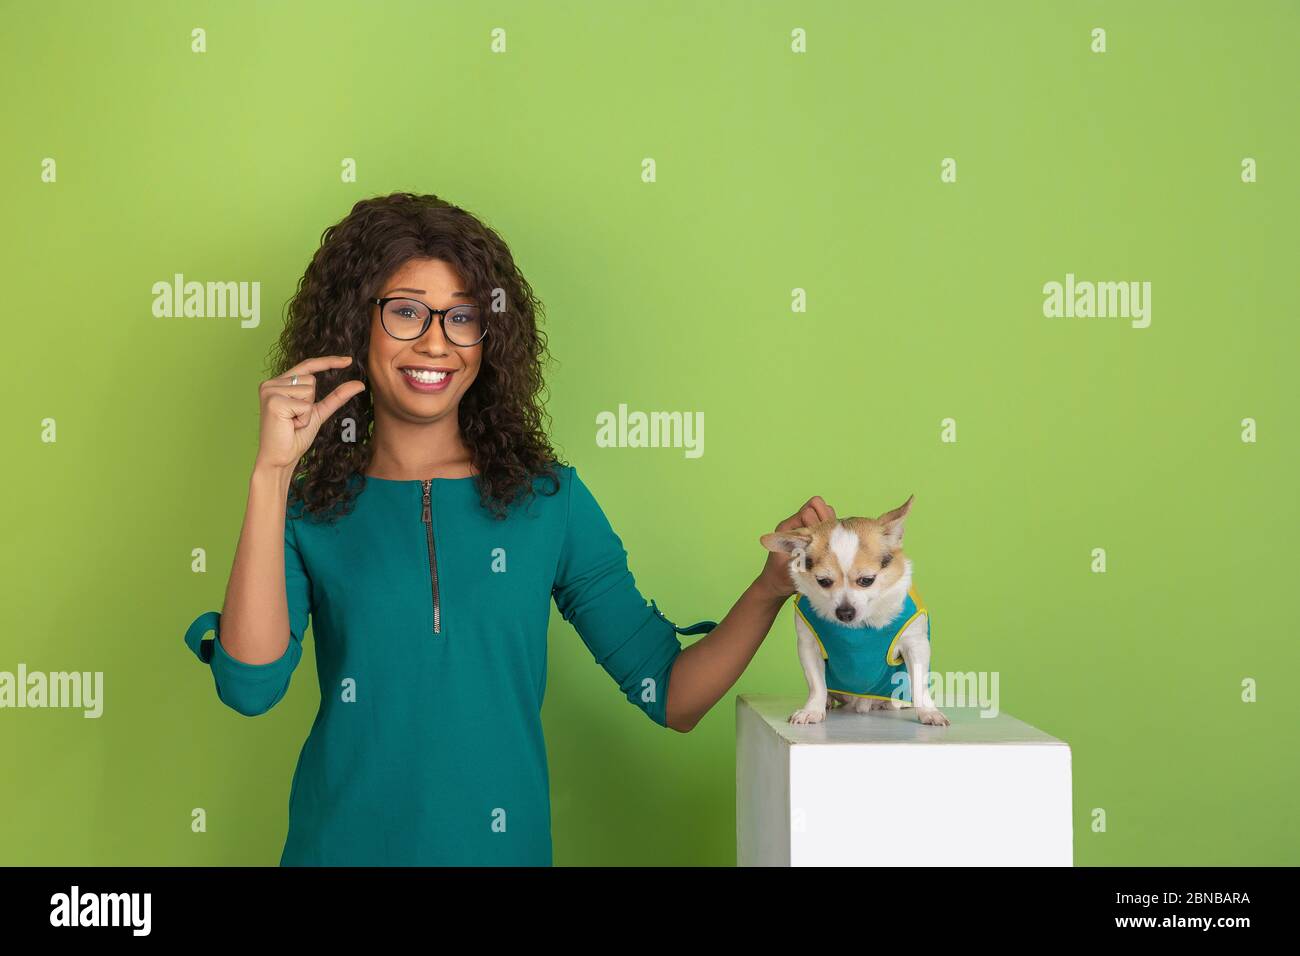 Zeigt etwas wenig mit den Fingern. afroamerikanische junge Frau Porträt isoliert auf grünem Hintergrund. Schönes Modell mit wenig doggy. Konzept der menschlichen Emotionen, Gesichtsausdruck, Verkauf, Anzeige. Stockfoto